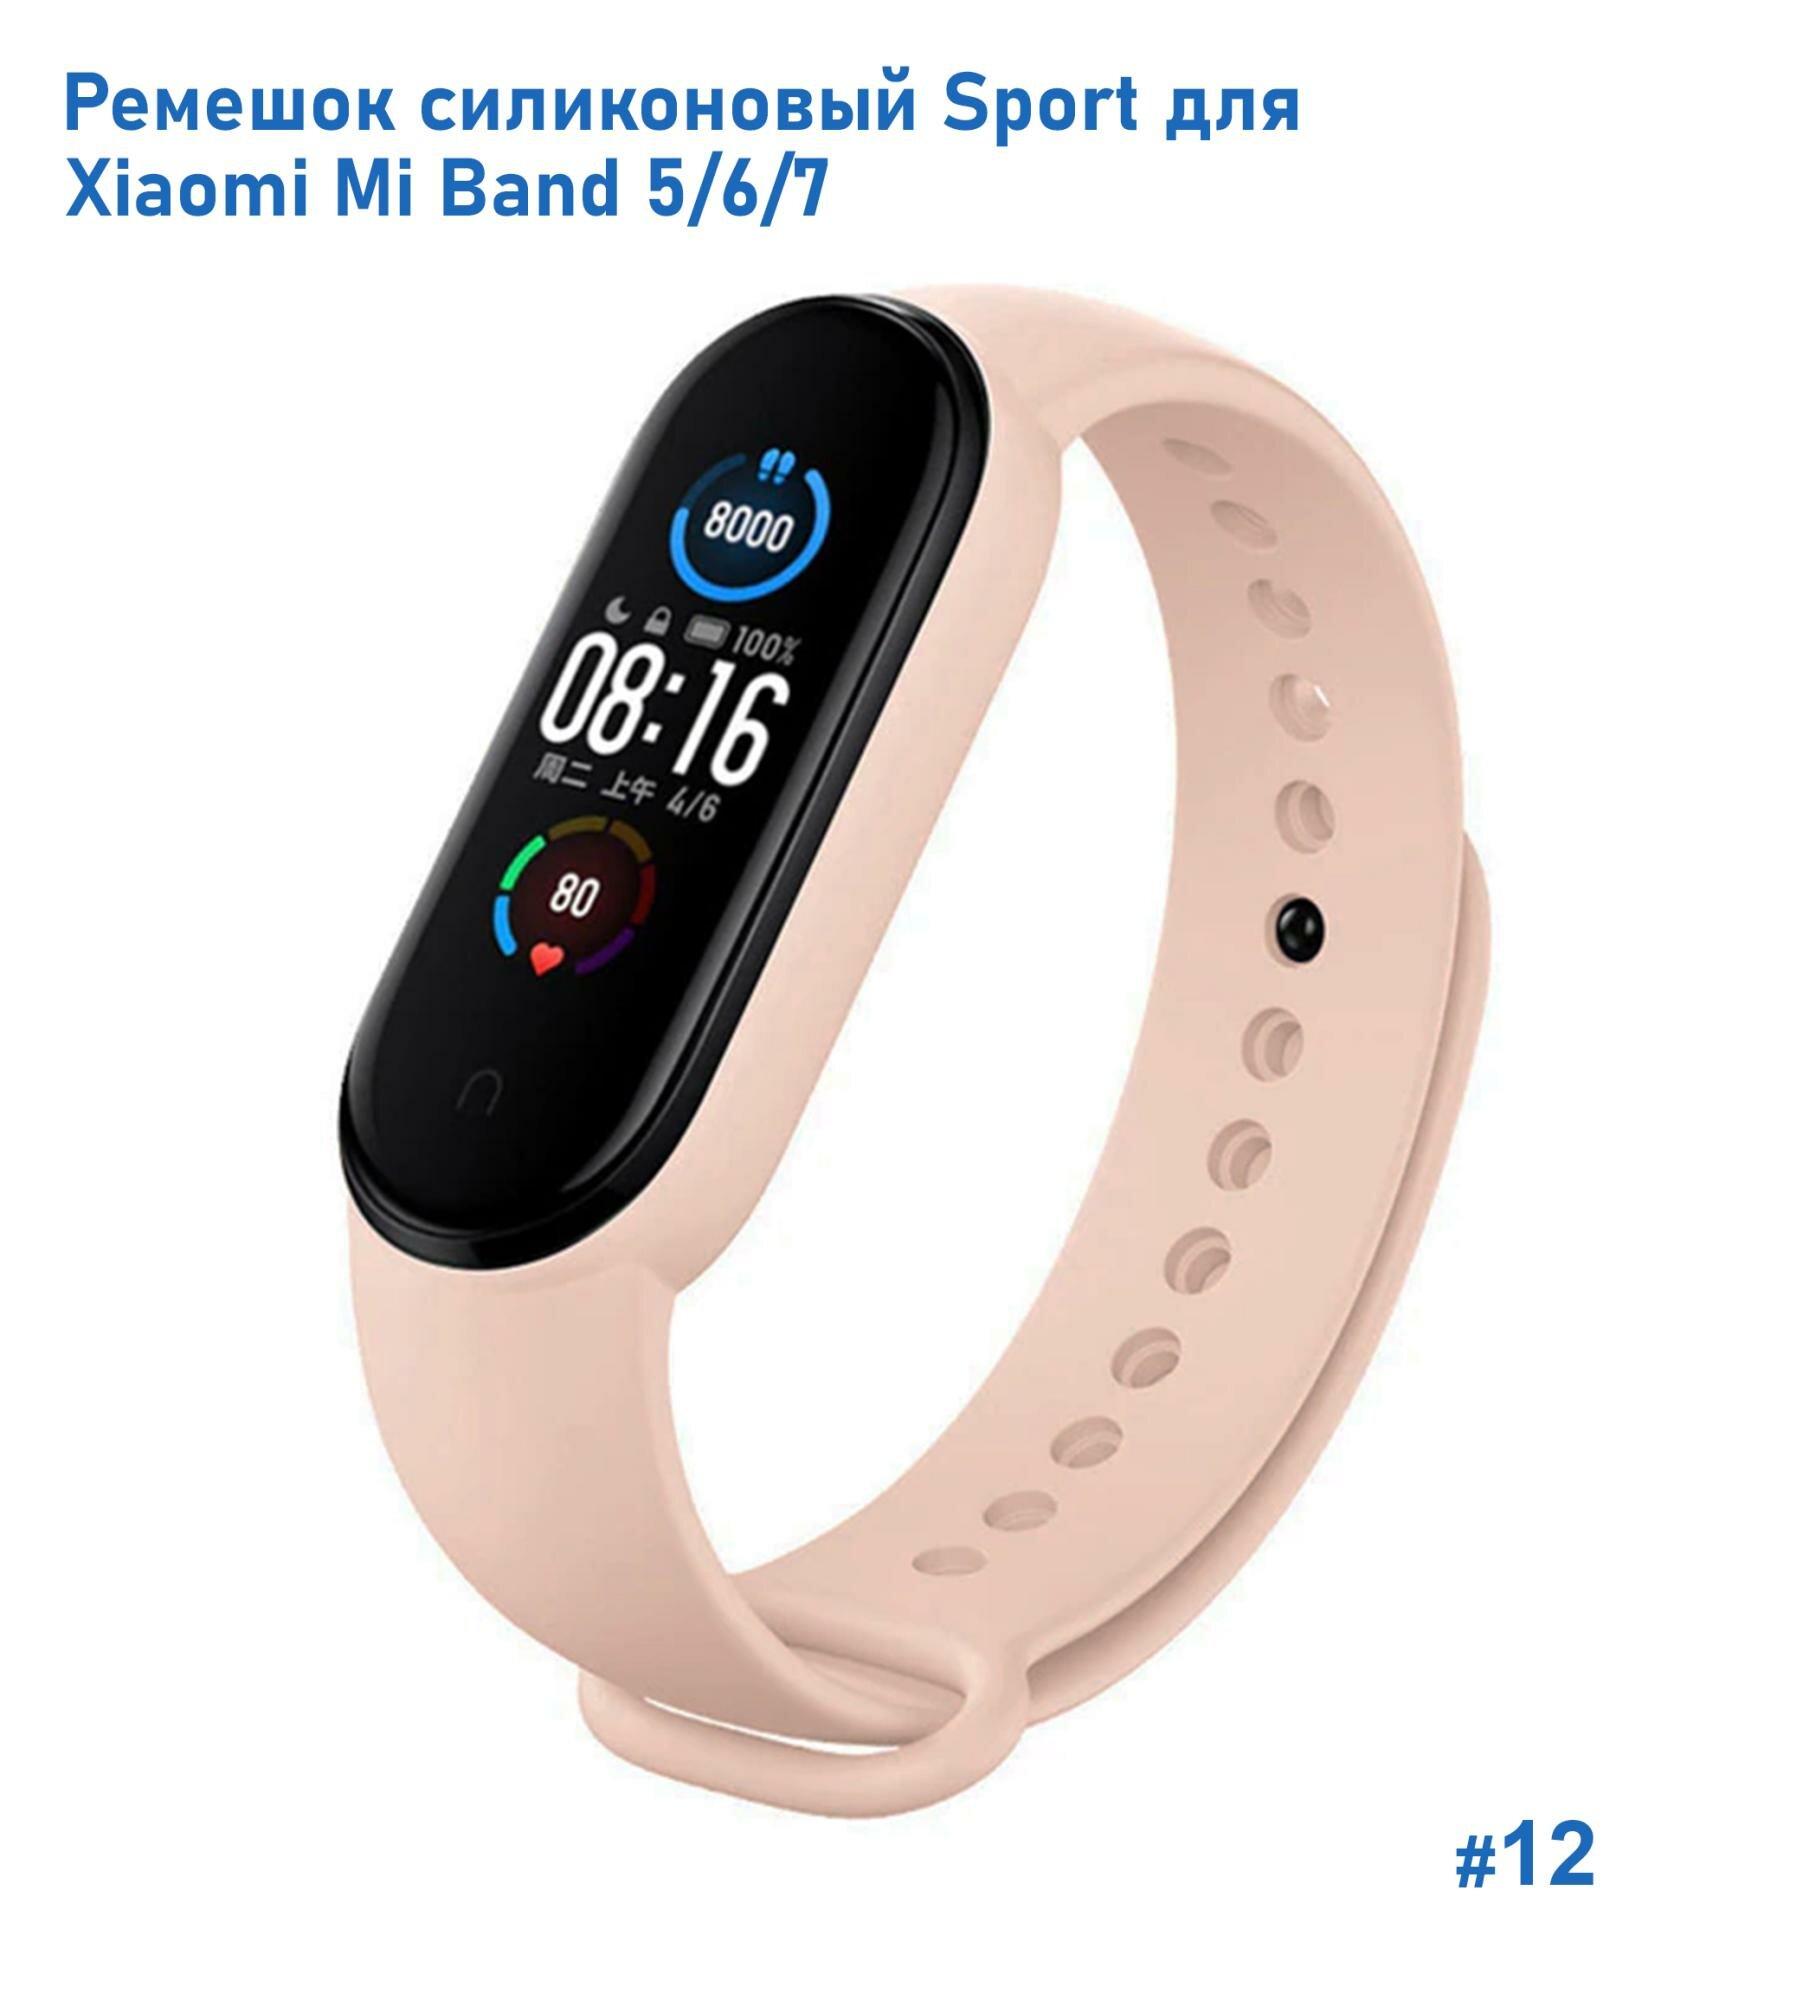 Ремешок силиконовый Sport для Xiaomi Mi Band 5/6/7, на кнопке, бледно-розовый (12)